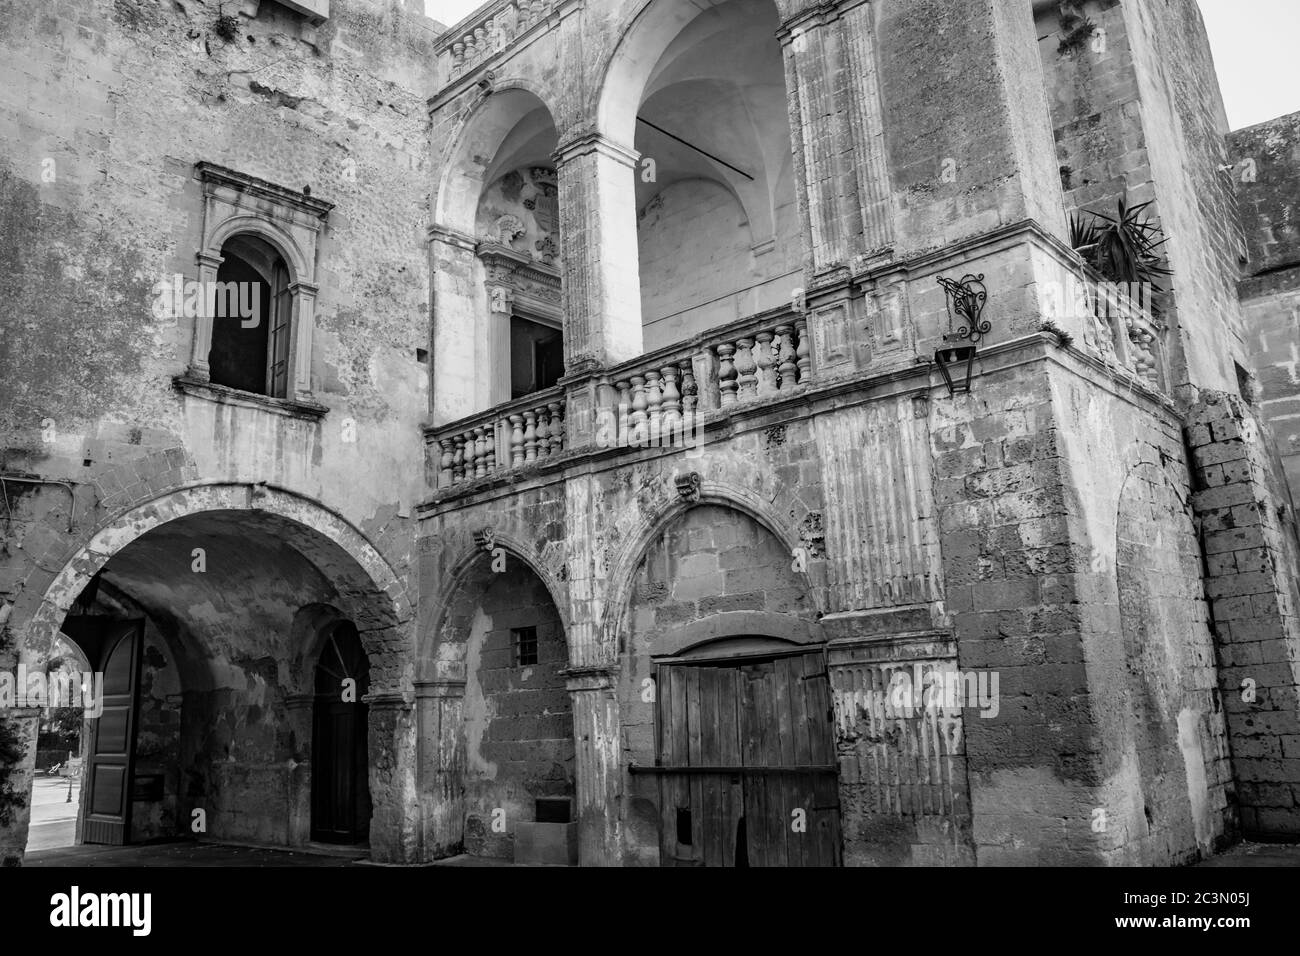 La cour du château de la famille Castromediano Lymburgh, à Cavallino, Lecce, Puglia, Salento, Italie. Le palais ducal. Élément architectural Banque D'Images